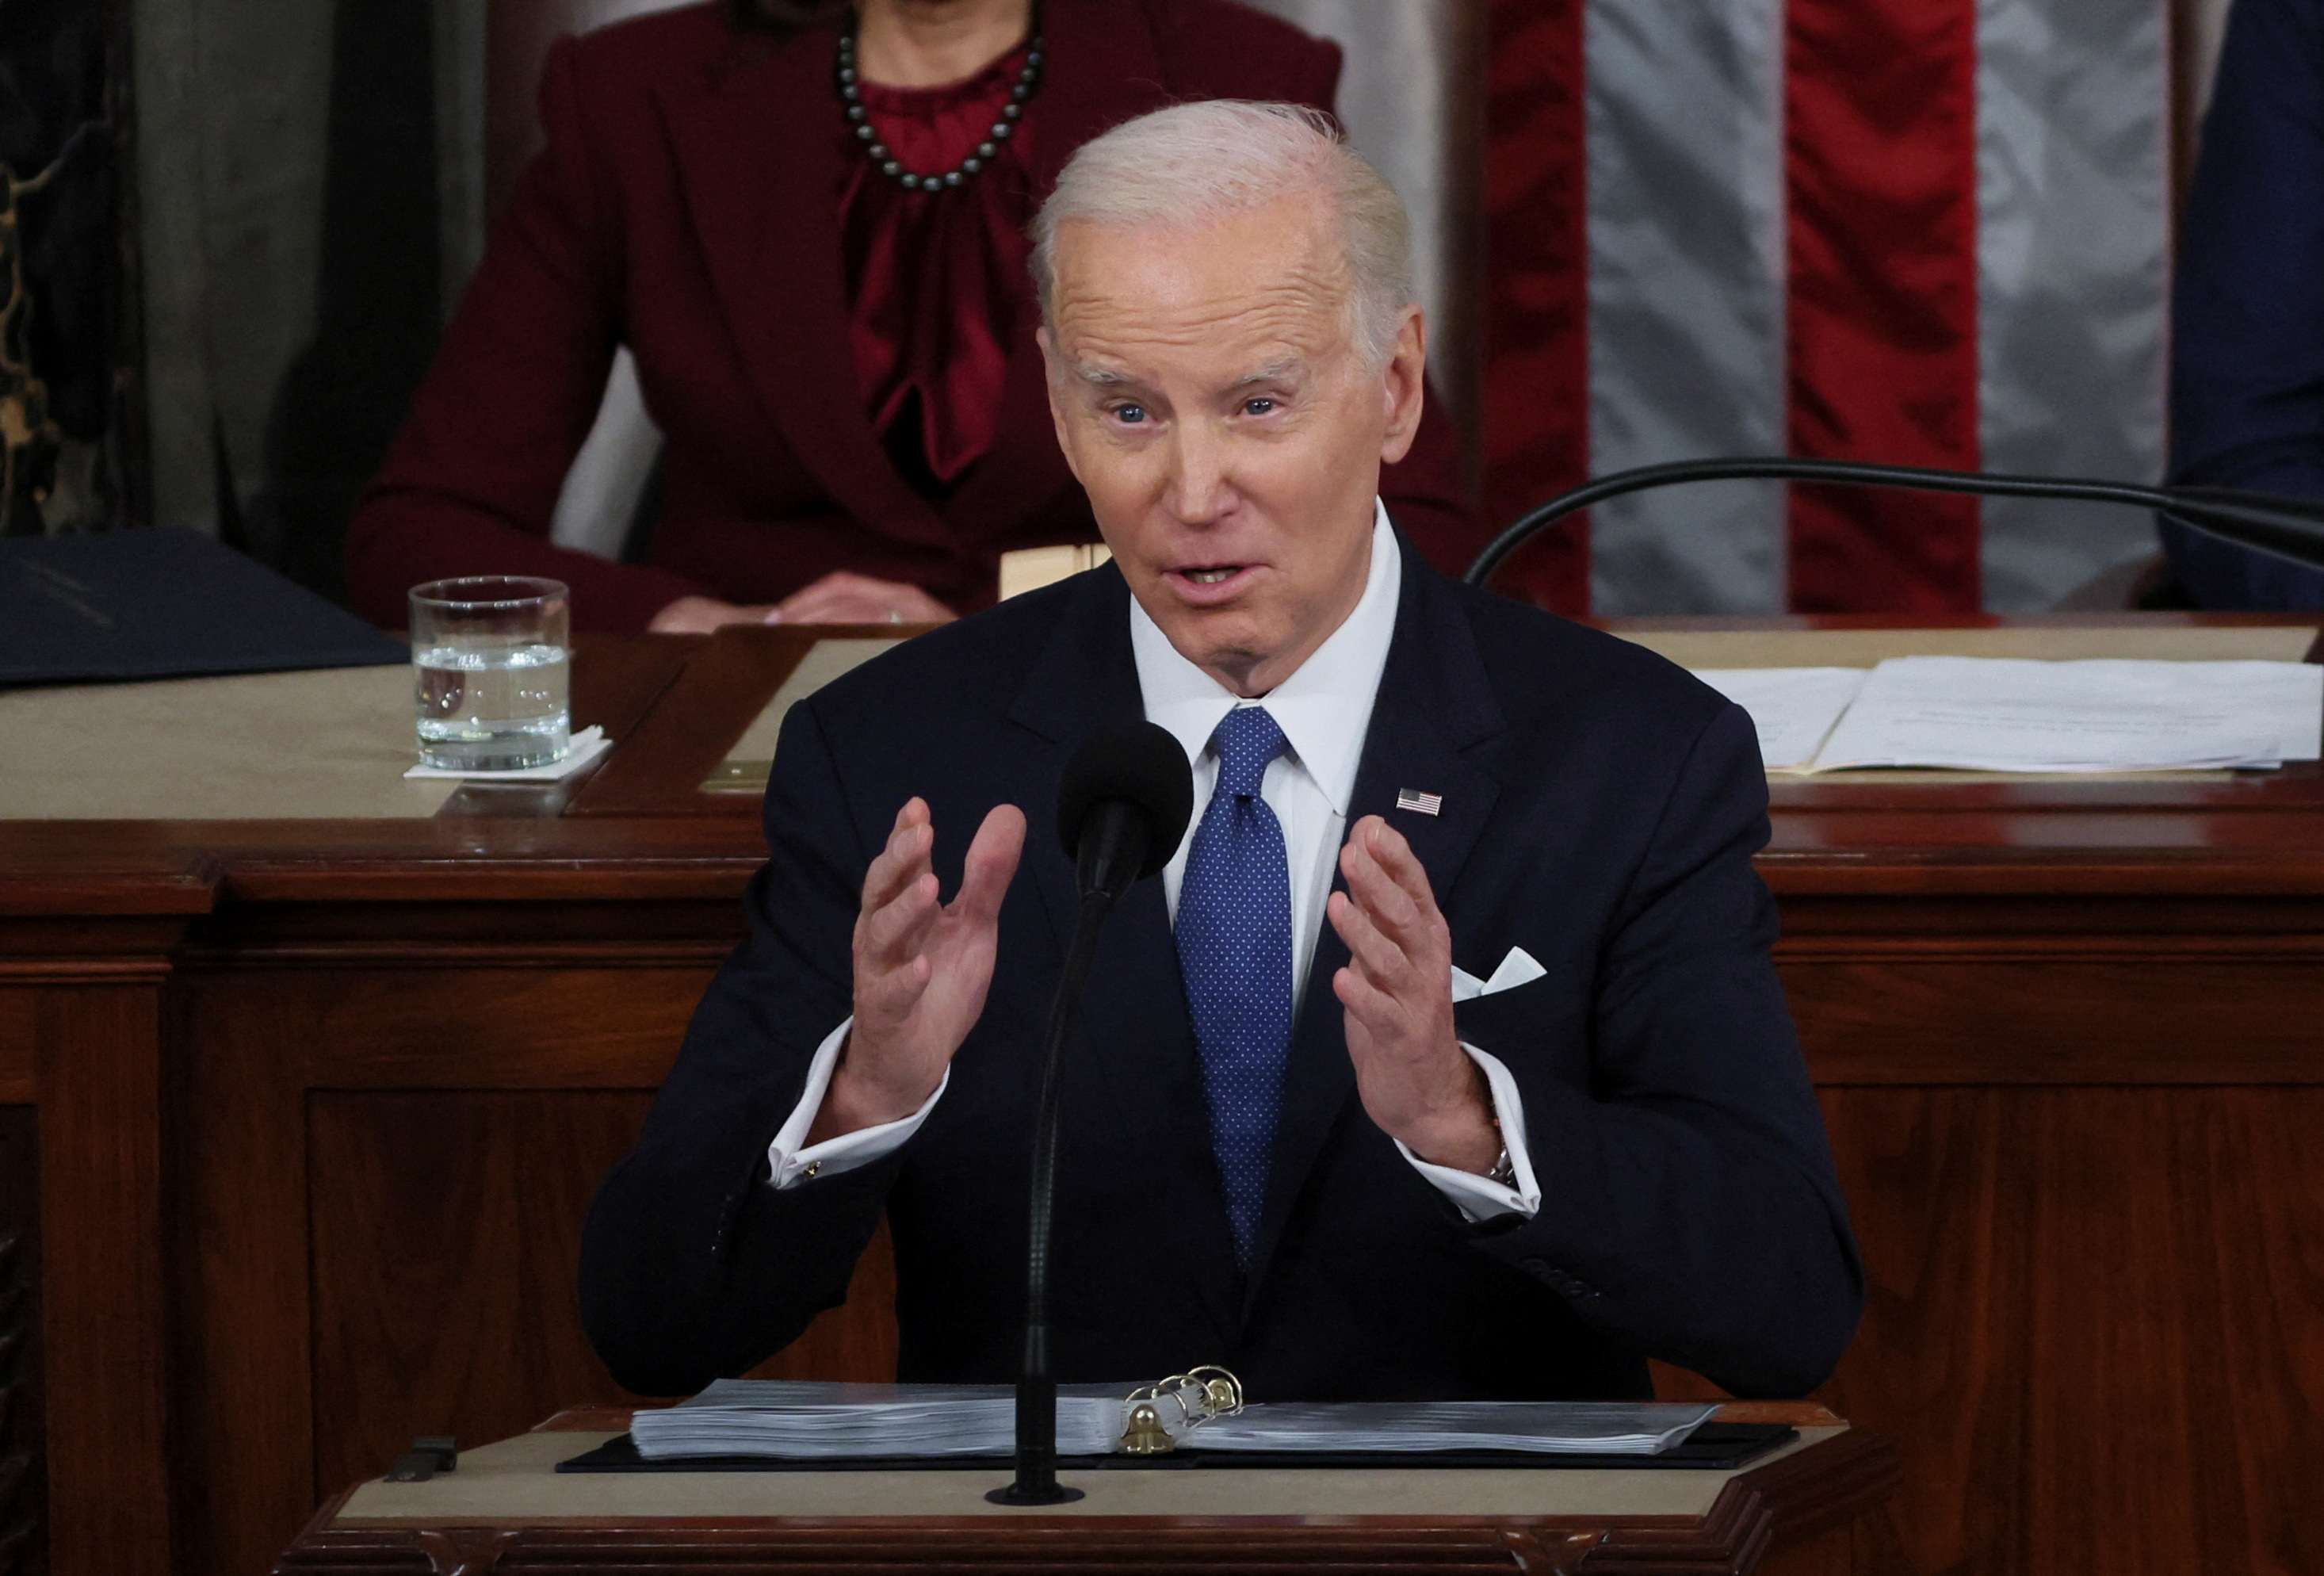 Joe Biden, advirtió que si China amenaza a la soberanía de su país, actuará como ya lo ha hecho, en clara alusión al derribo del globo espía chino que sobrevoló el territorio de EE.UU la semana pasada. (REUTERS)